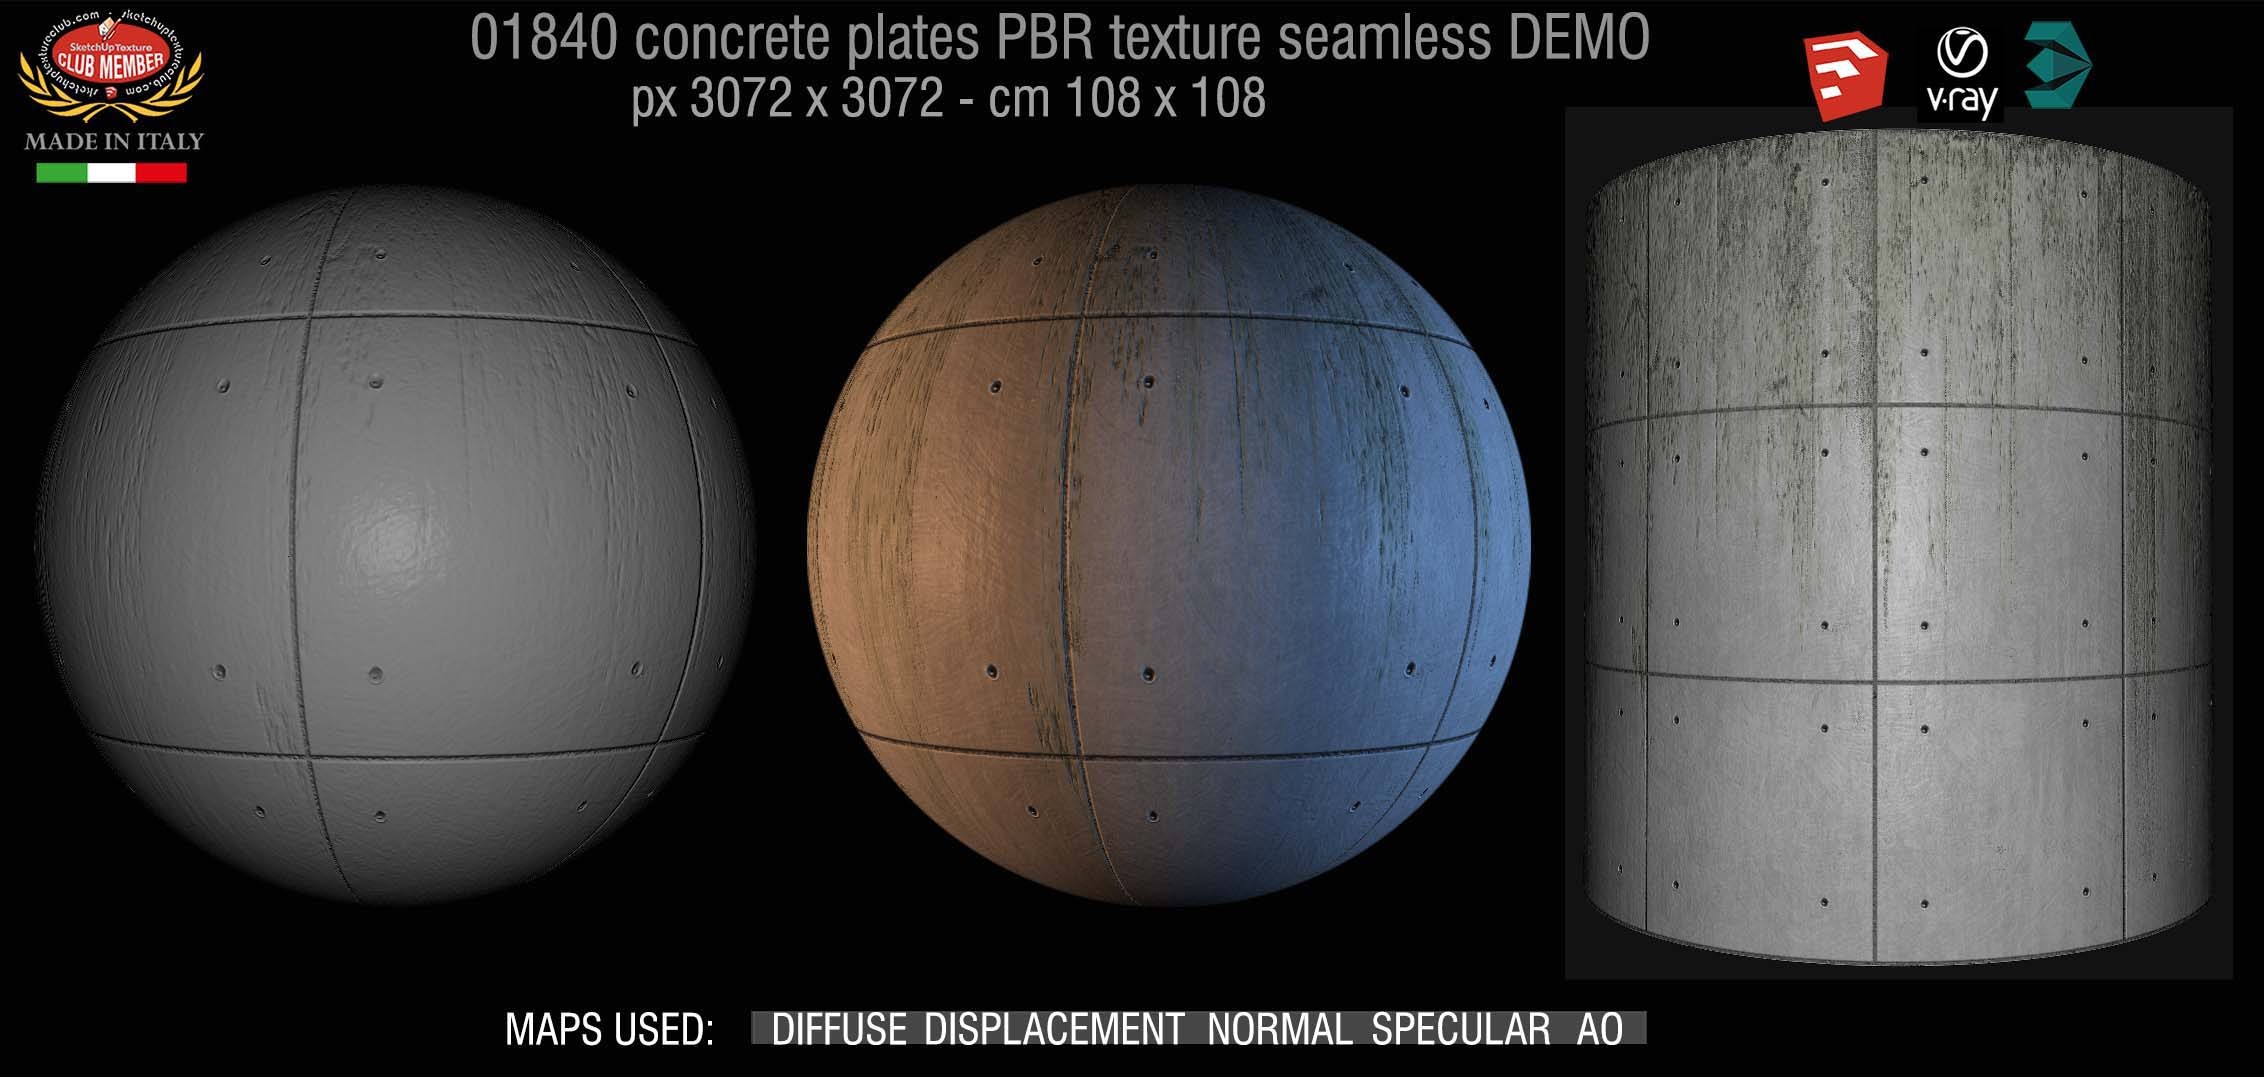 01840 Tadao Ando concrete plates PBR texture seamless DEMO